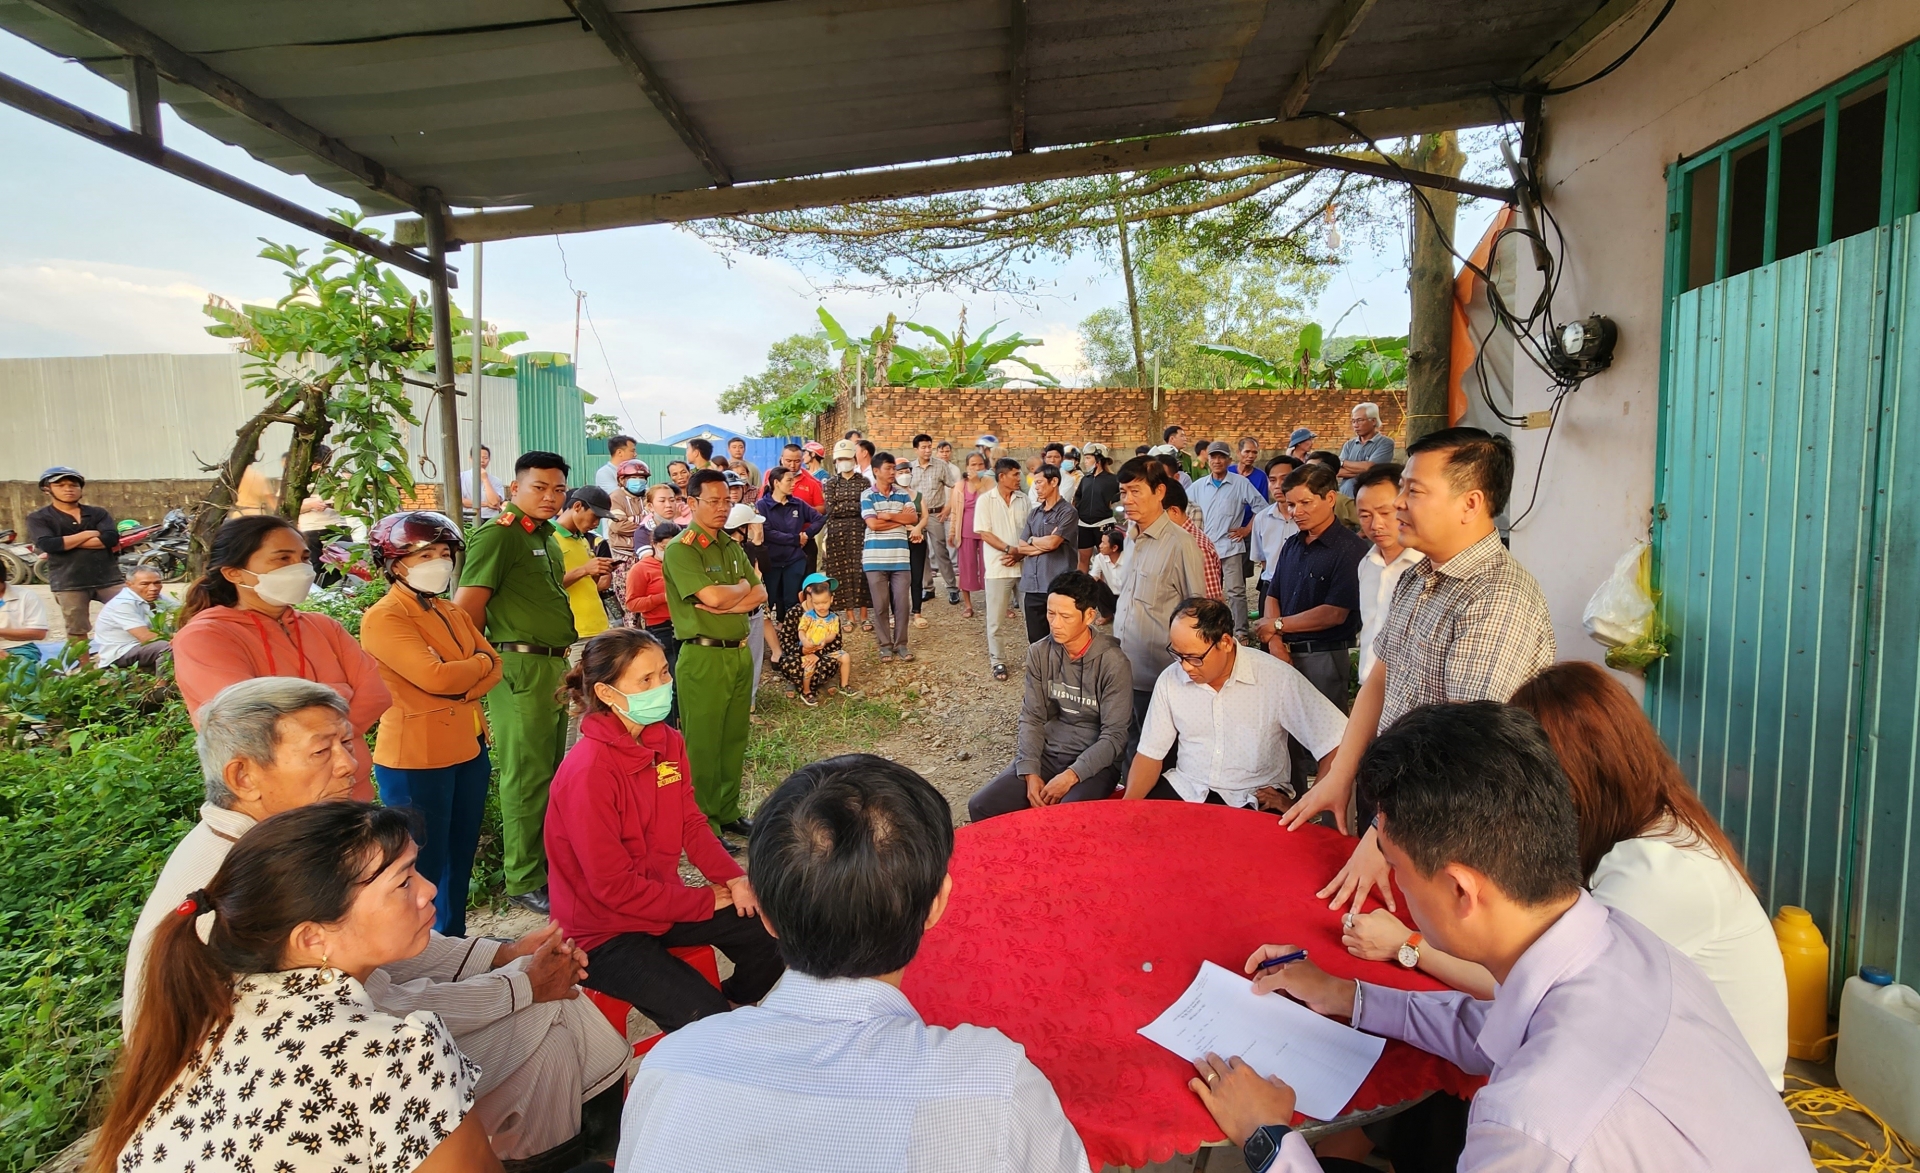 Lãnh đạo huyện Đạ Tẻh gặp mặt đối thoại với người dân Thôn 1 (xã Triệu Hải) vào chiều ngày 22/11